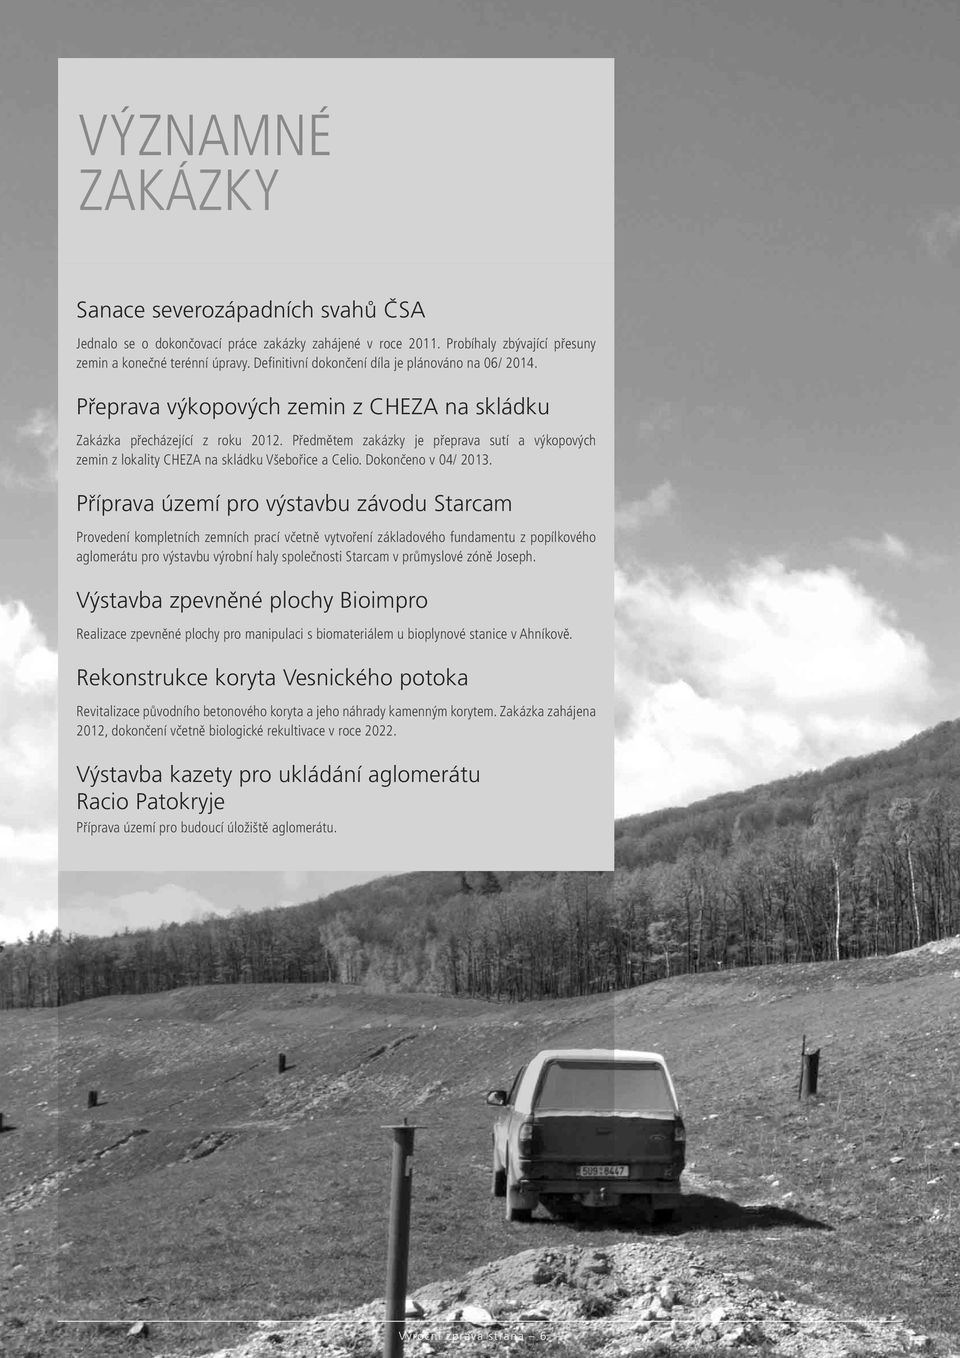 Předmětem zakázky je přeprava sutí a výkopových zemin z lokality CHEZA na skládku Všebořice a Celio. Dokončeno v 04/ 2013.